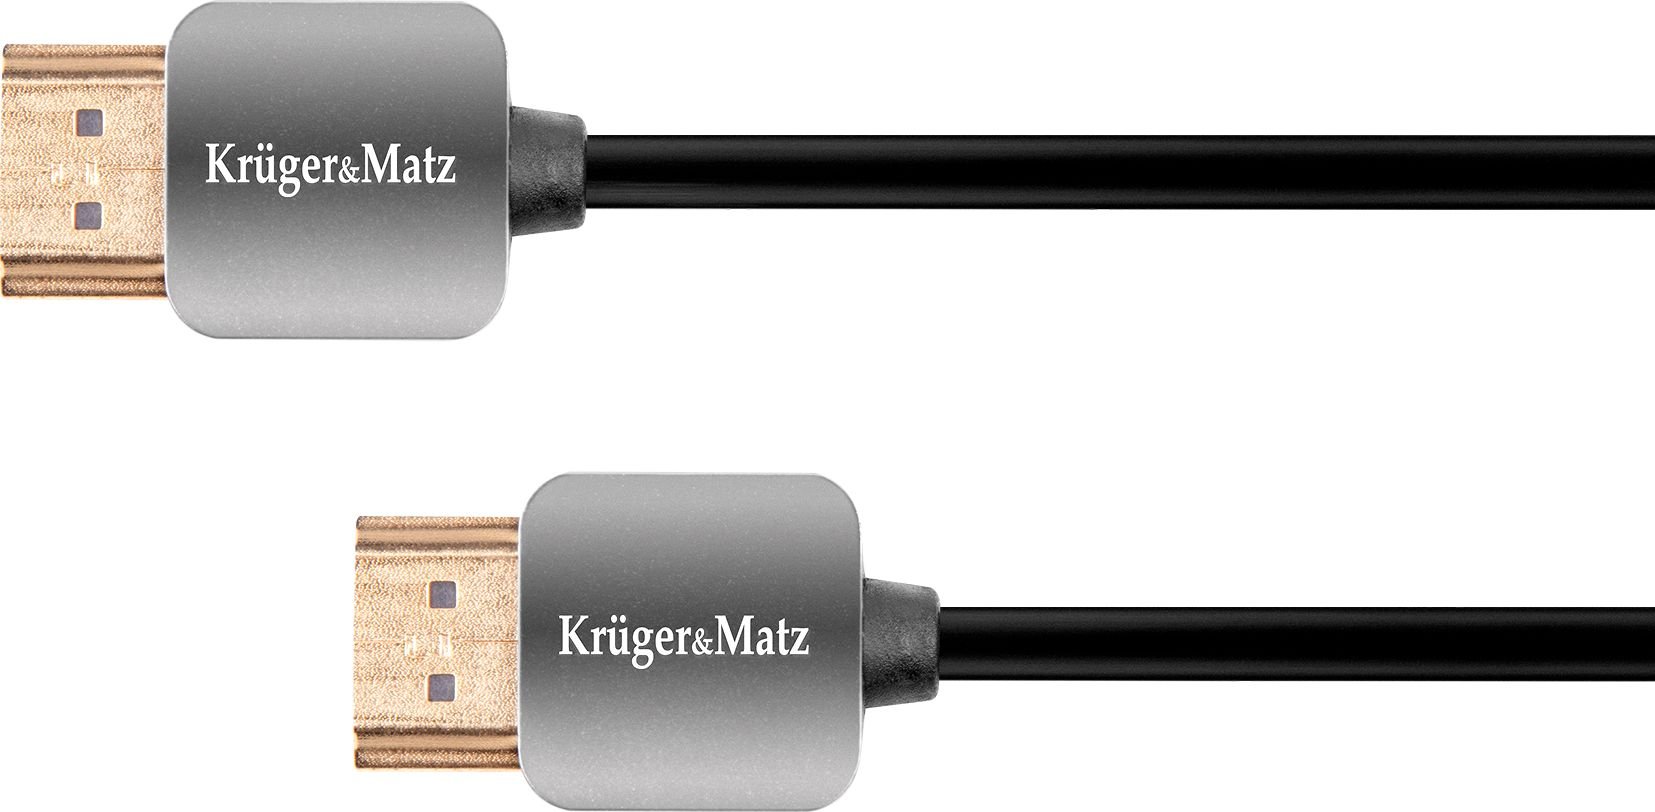 Kruger&Matz HDMI - cablu HDMI 3m negru (KM0330)